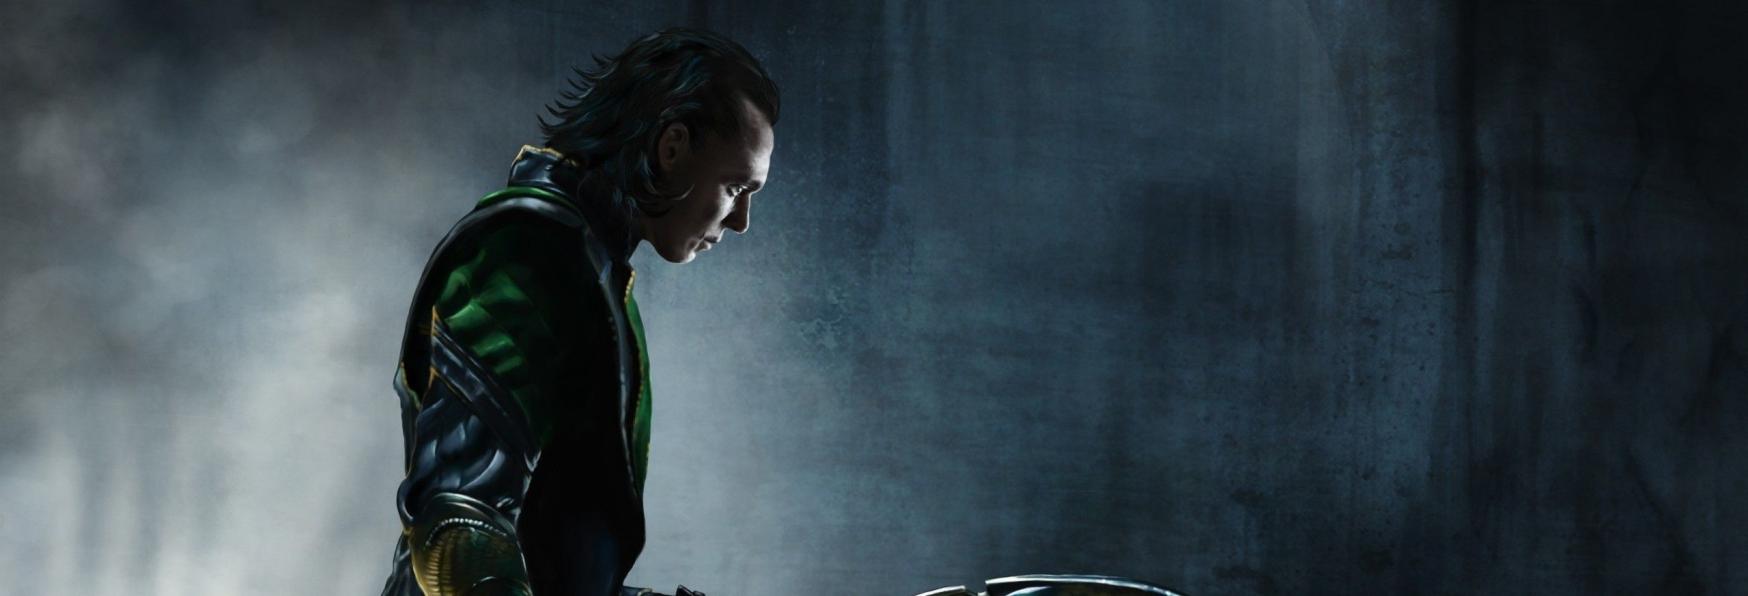 Loki: Rilasciato un nuovo Trailer dell'inedita Serie TV targata Marvel